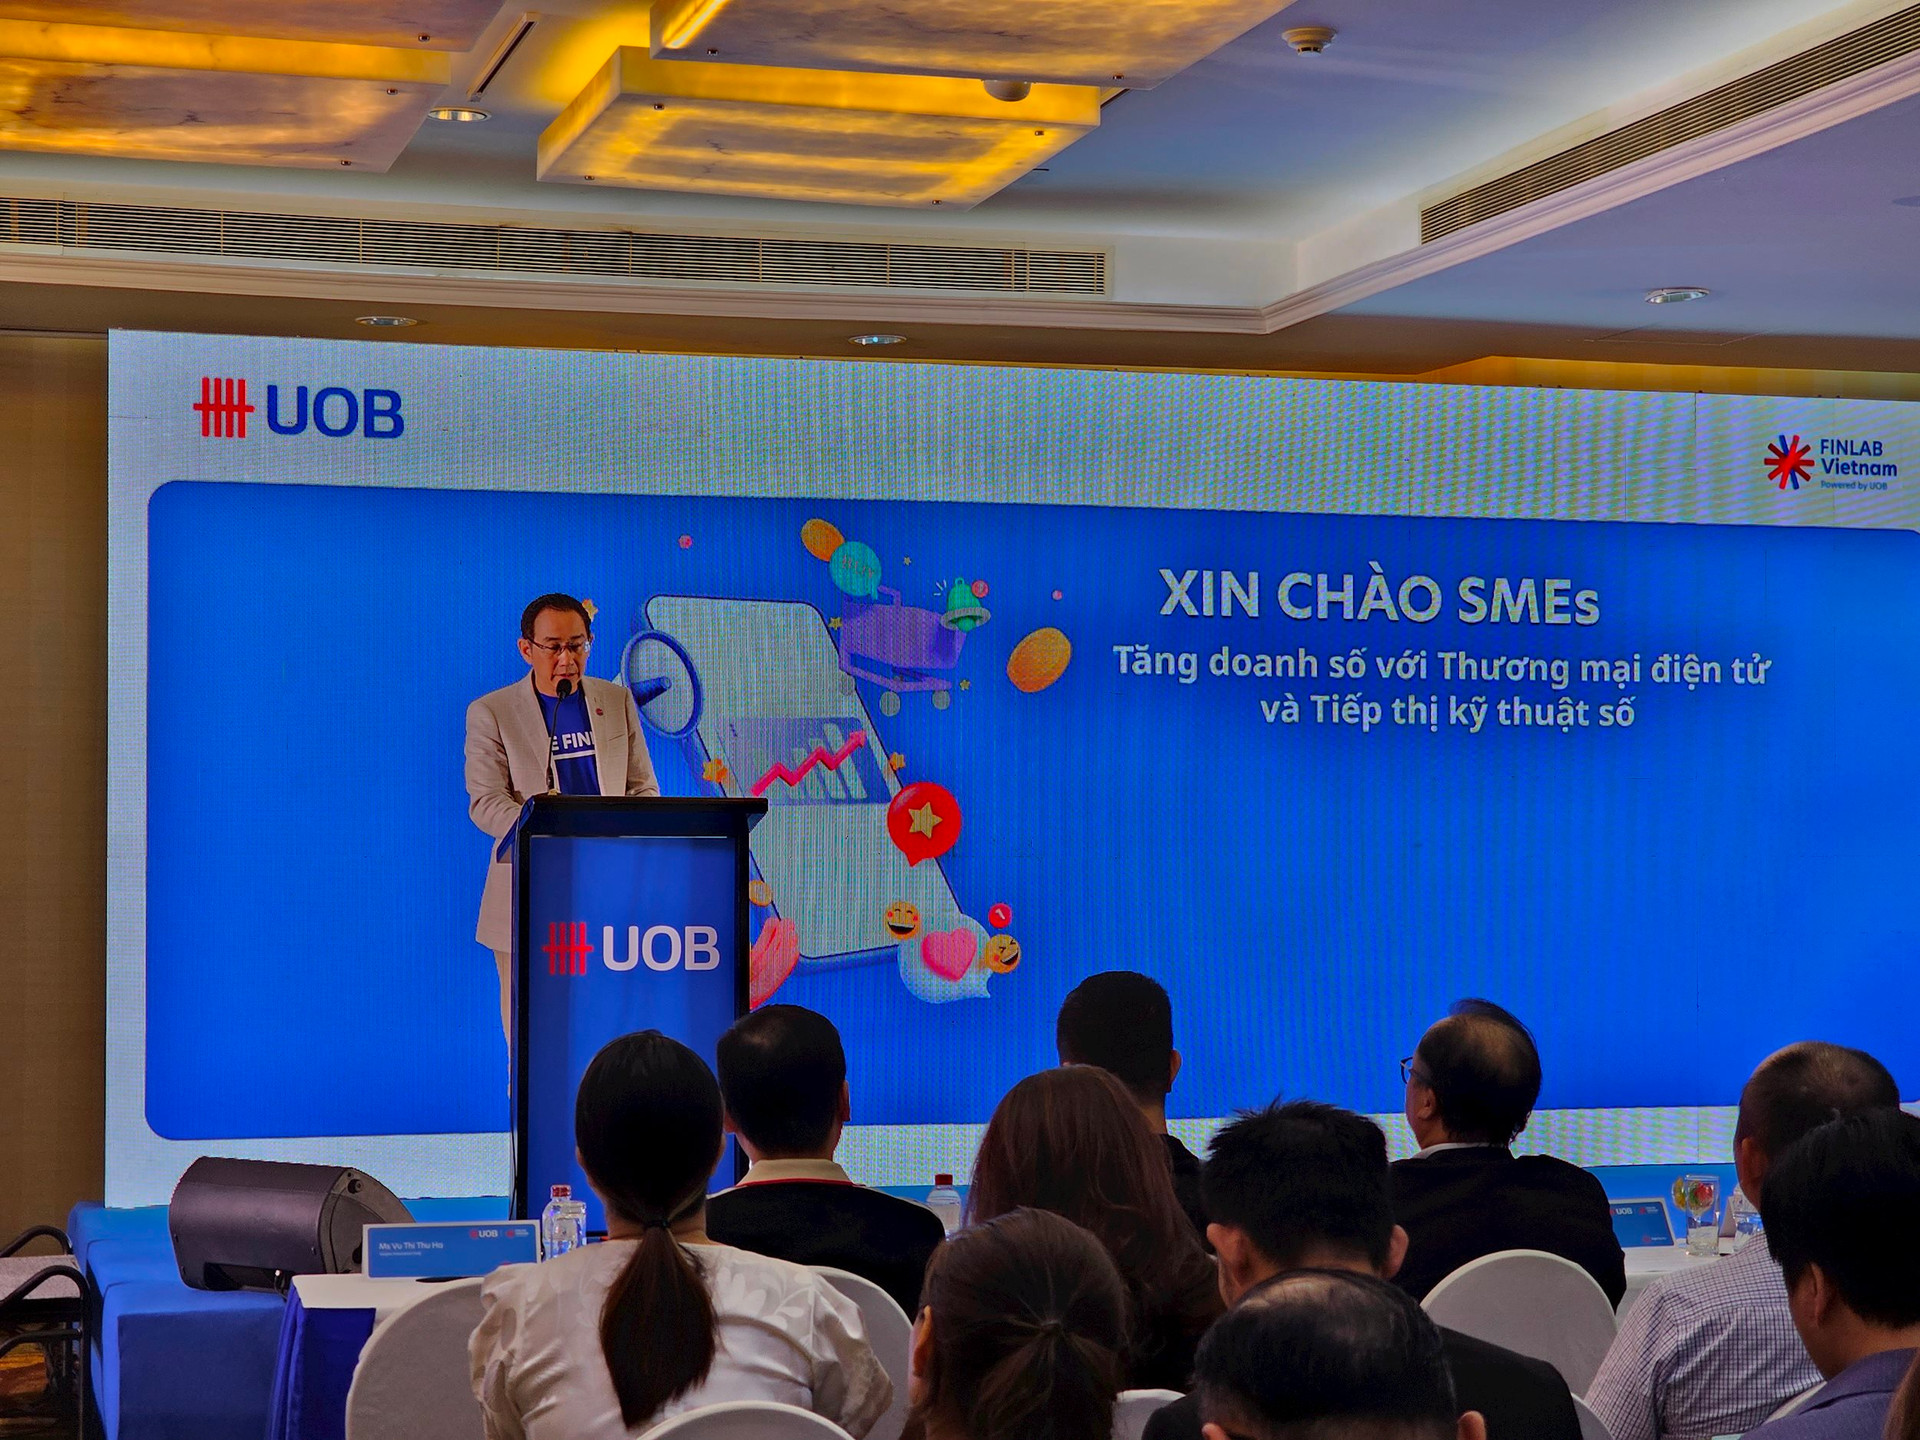 Xin chào SMEs: UOB Finlab bật mí các “tuyệt chiêu” giúp doanh nghiệp tăng doanh số và tiếp thị hiệu quả trong thương mại điện tử - Ảnh 2.